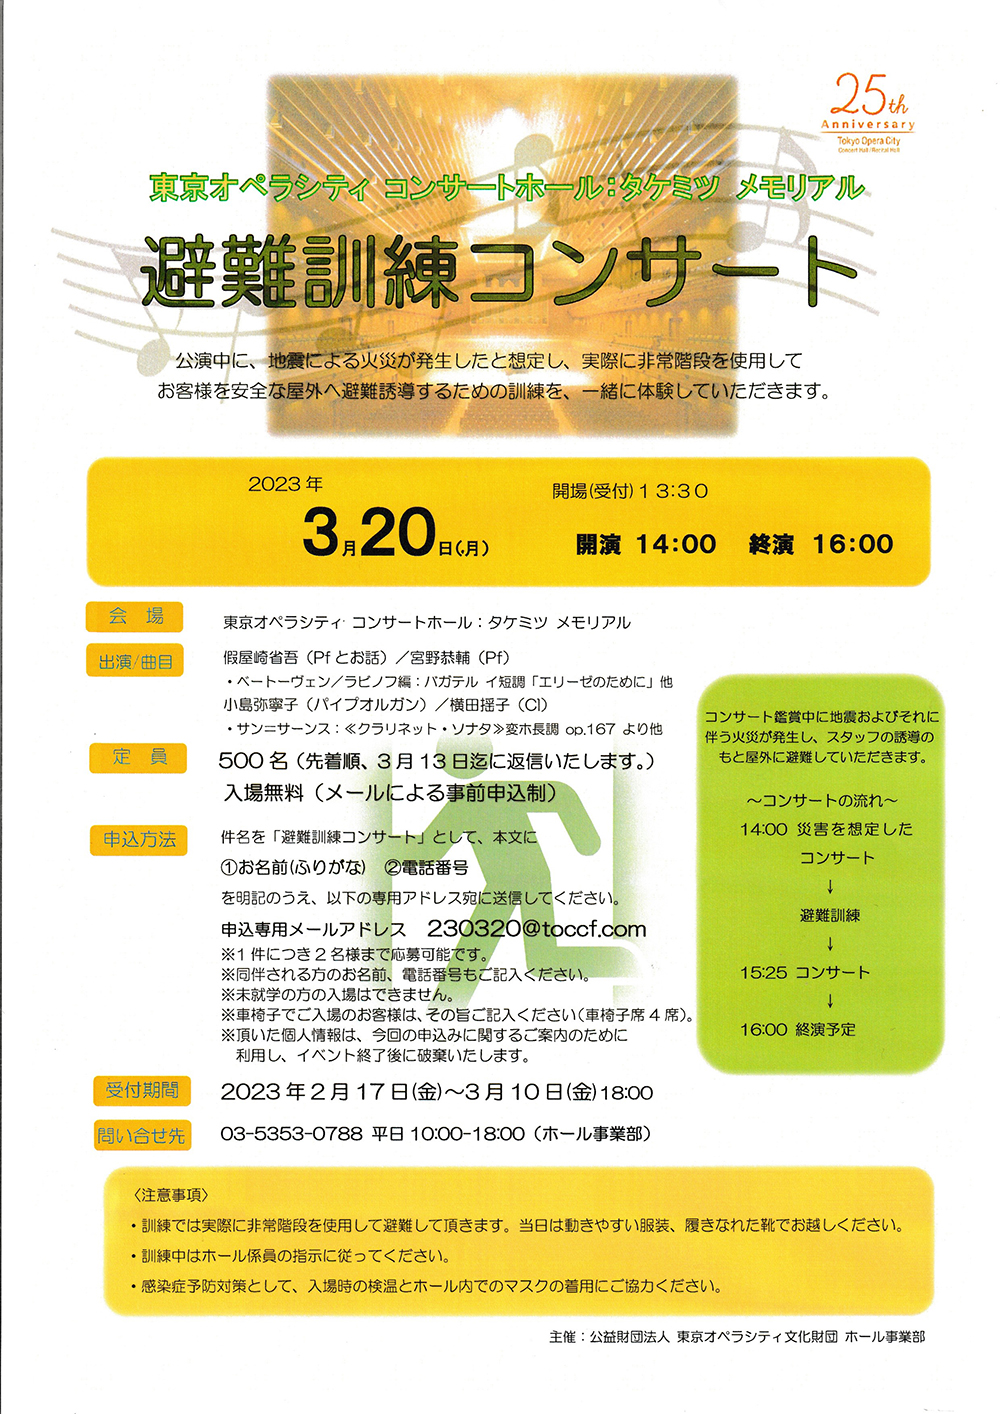 東京オペラシティ コンサートホール 避難訓練コンサート